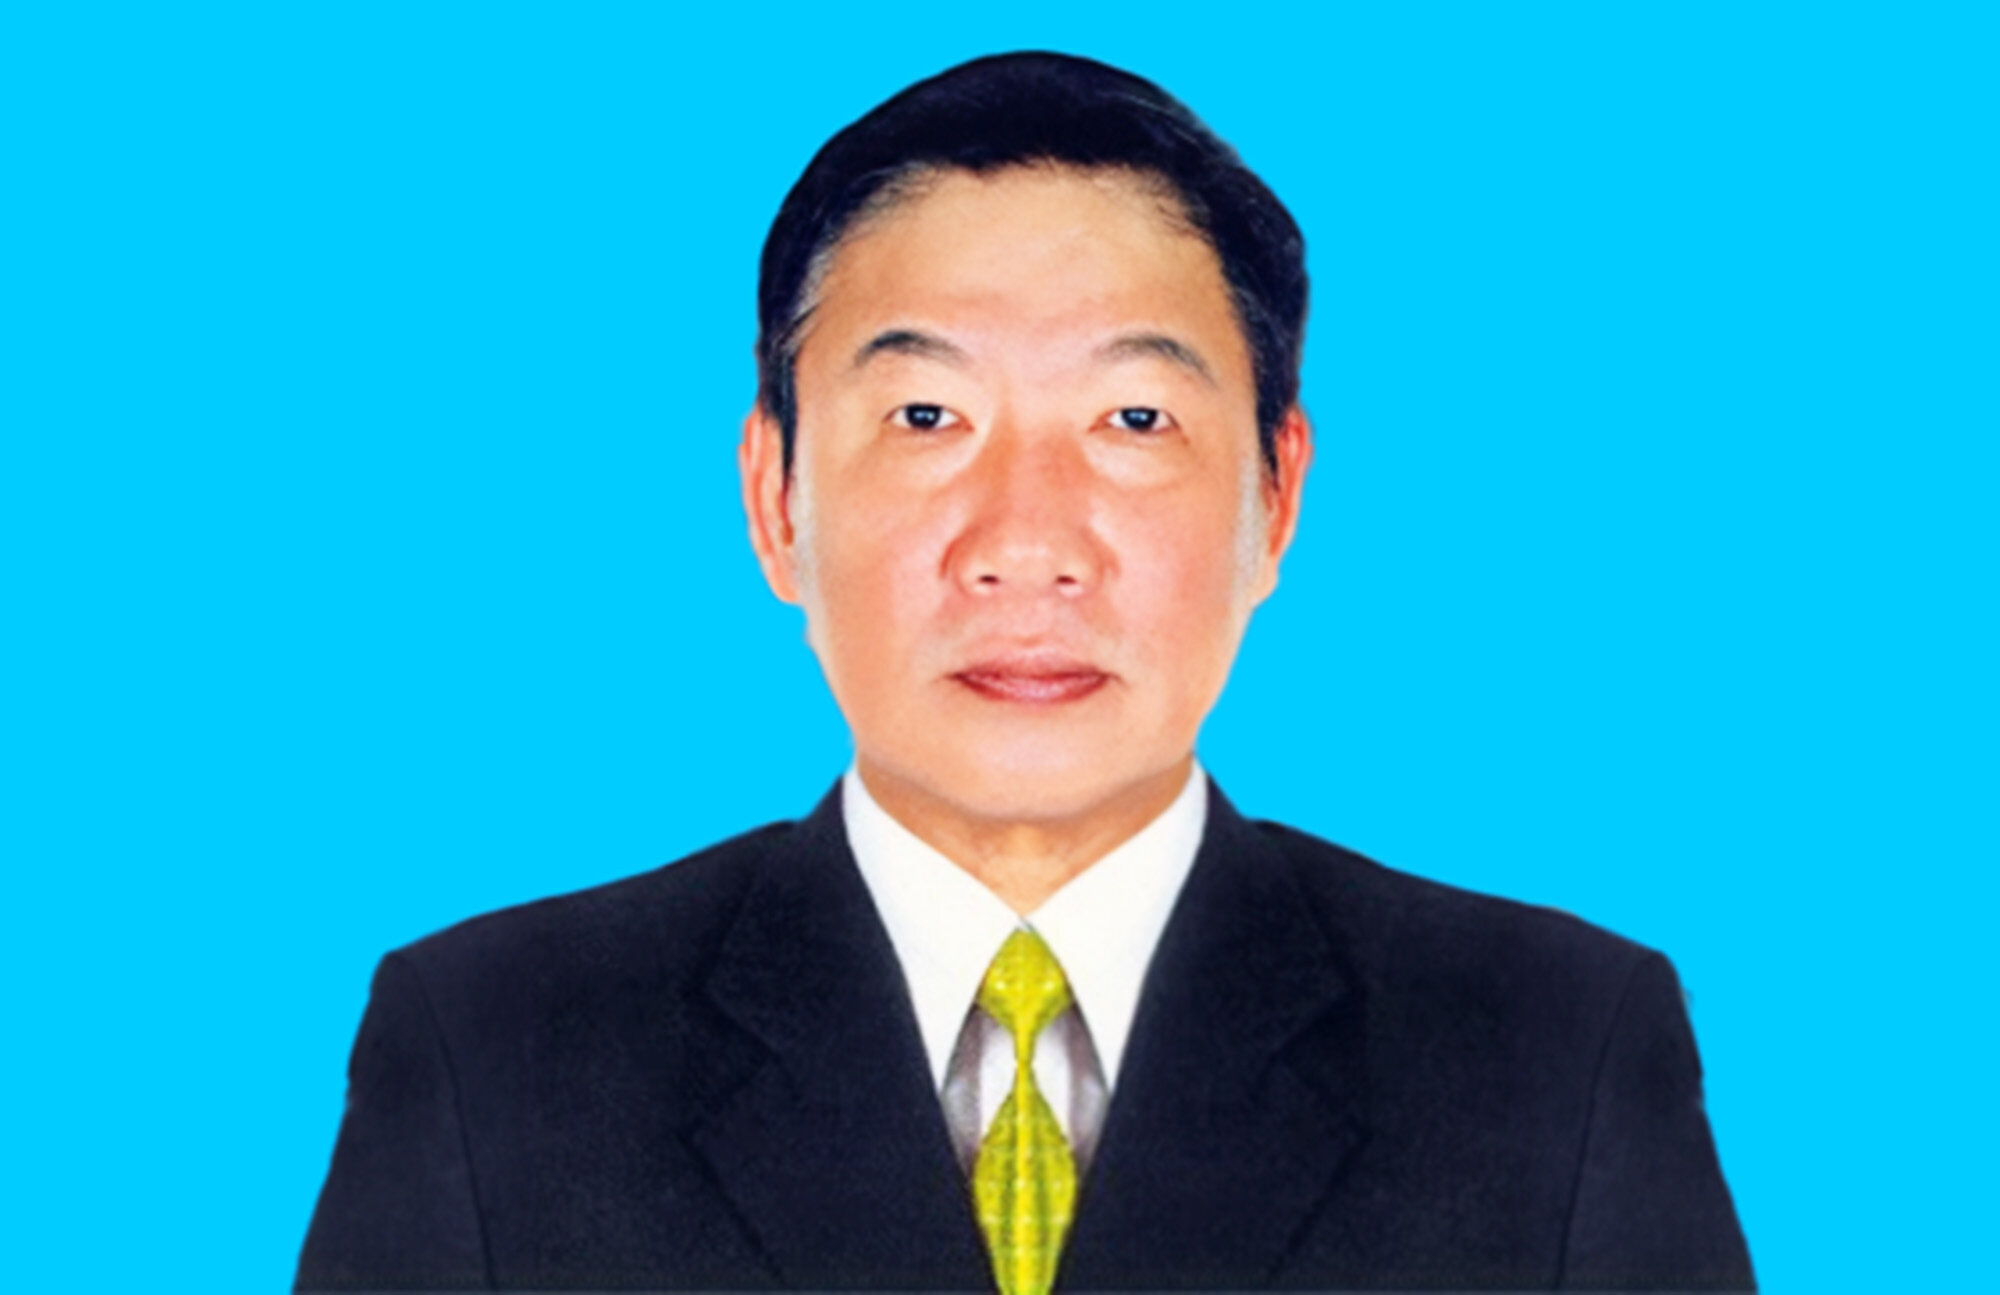 Bị cáo Phan Minh Tân (69 tuổi), cựu Giám đốc Sở Khoa học và Công nghệ TP.HCM giai đoạn 2006 - 2014.